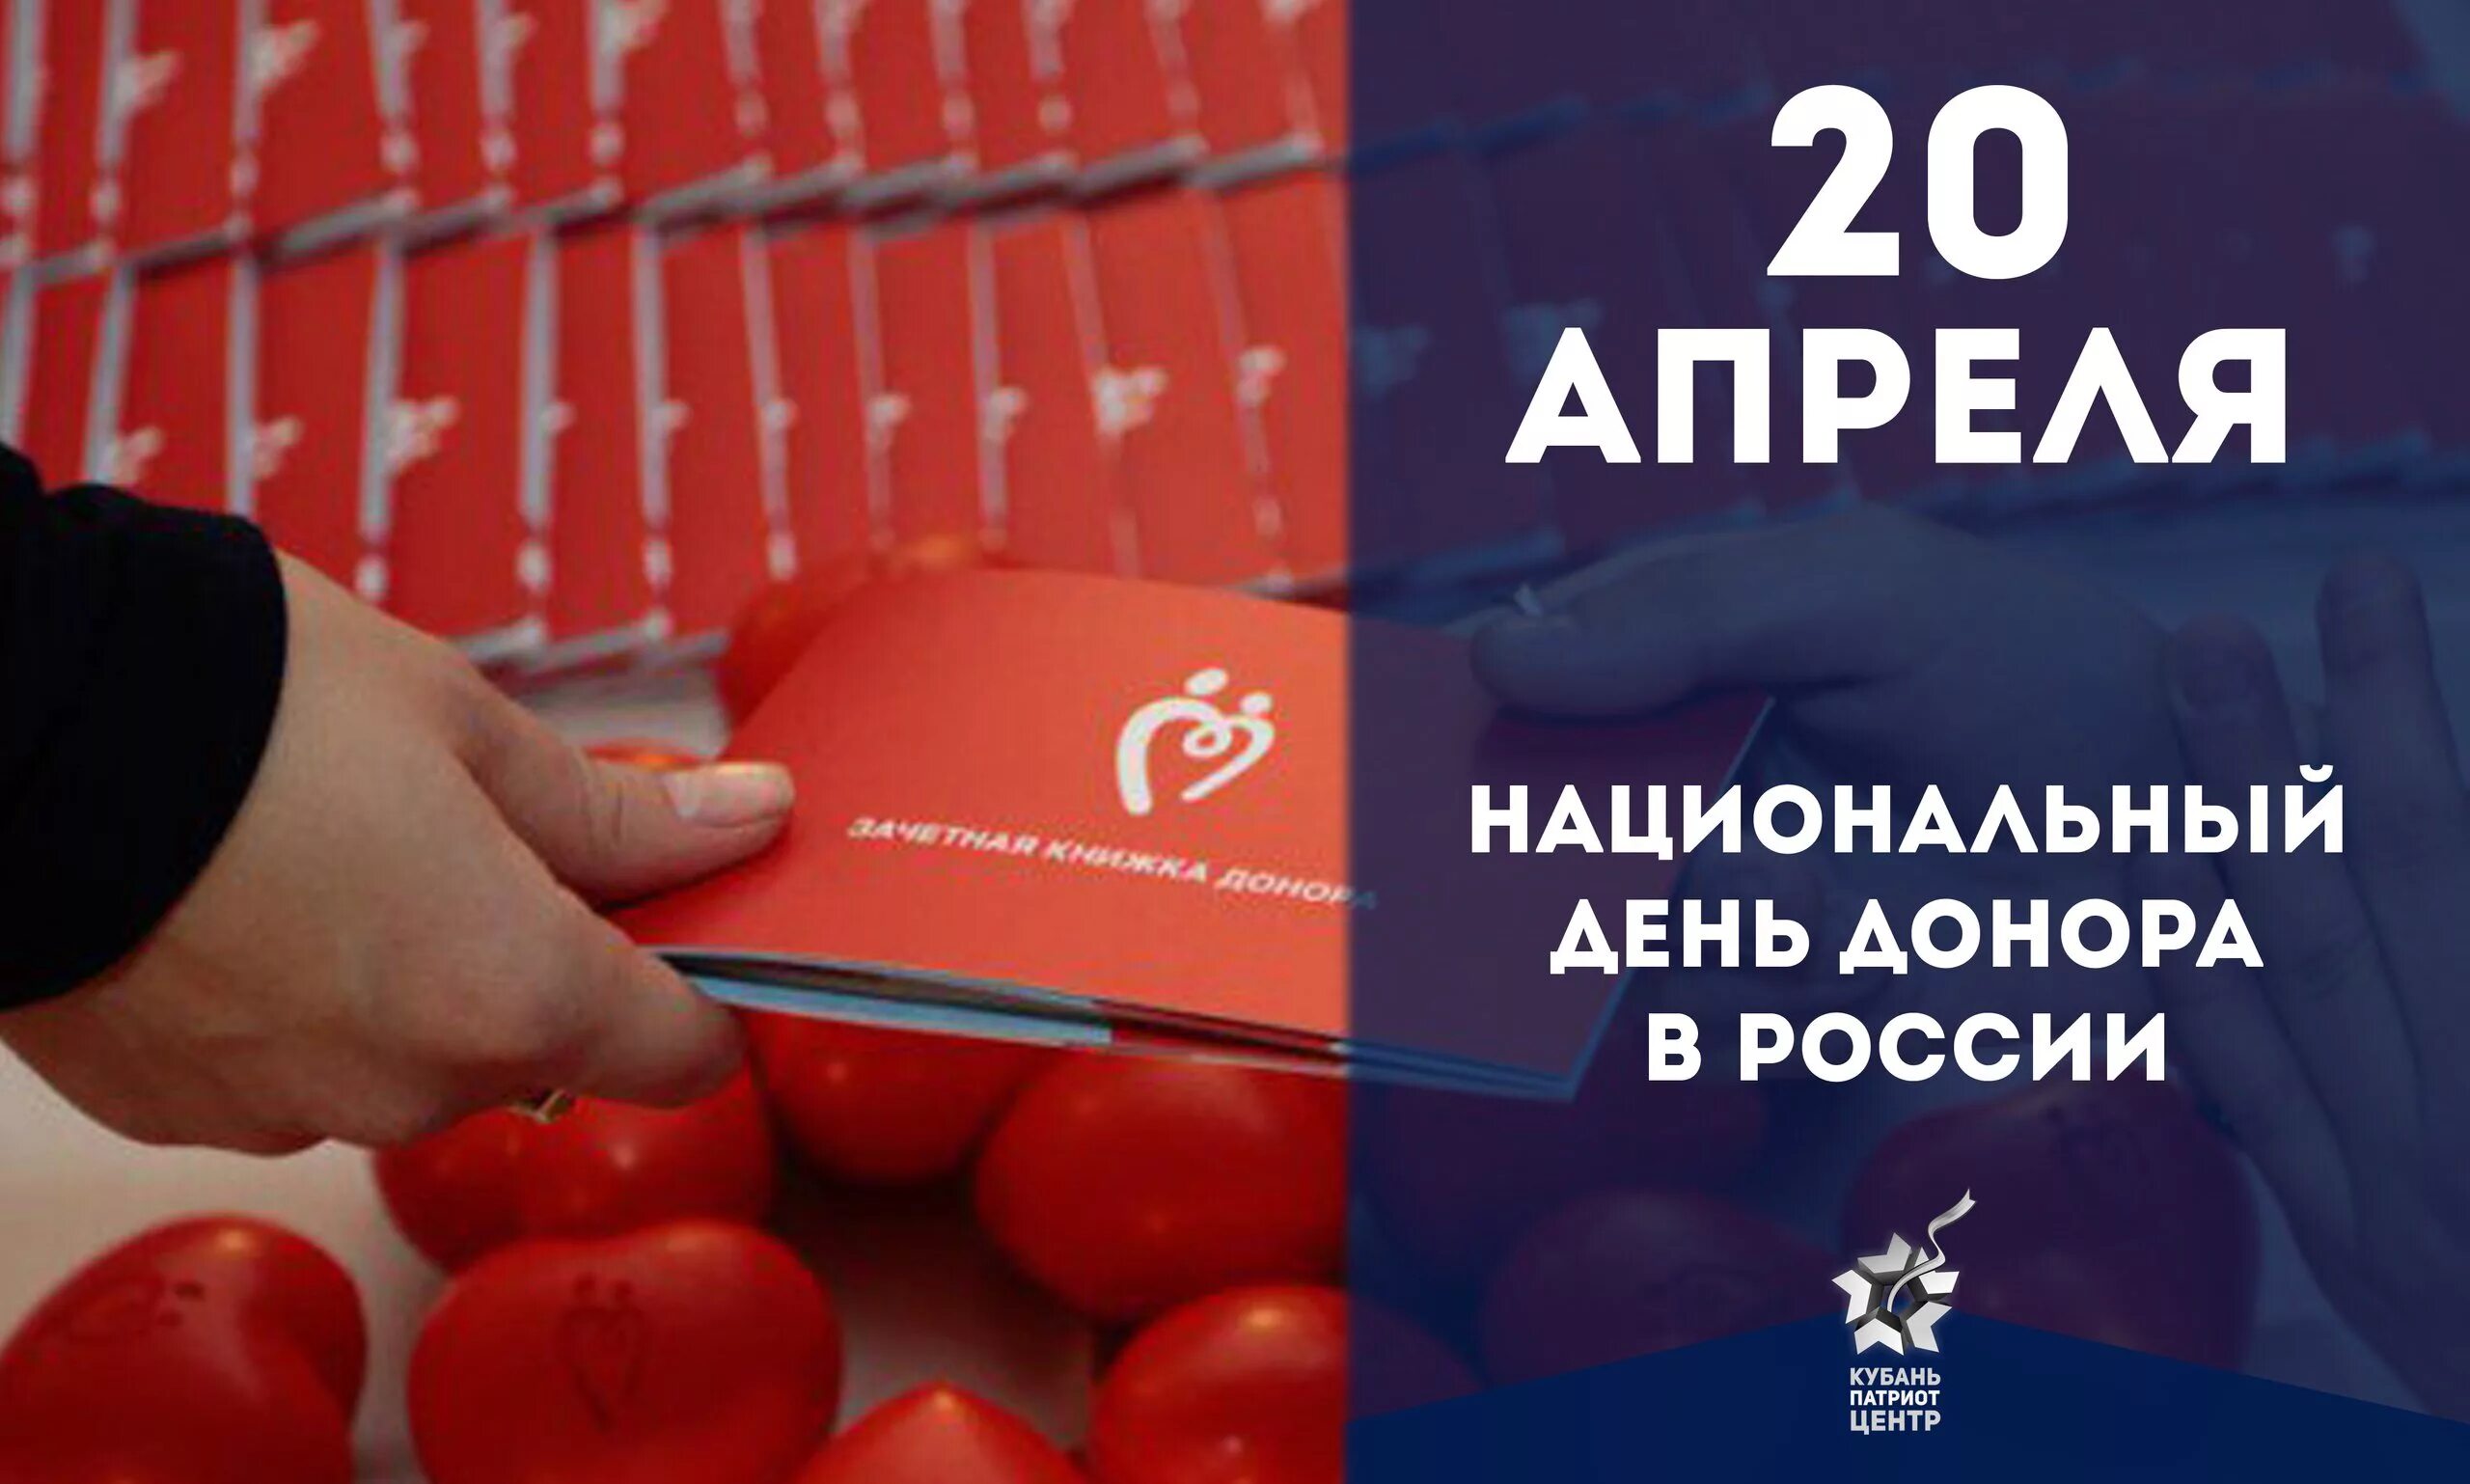 20 апреля день донора в россии. Национальный день донора. 20 Апреля день донора. Национальный день донора крови в России. Открытки с днём донора 20 апреля.